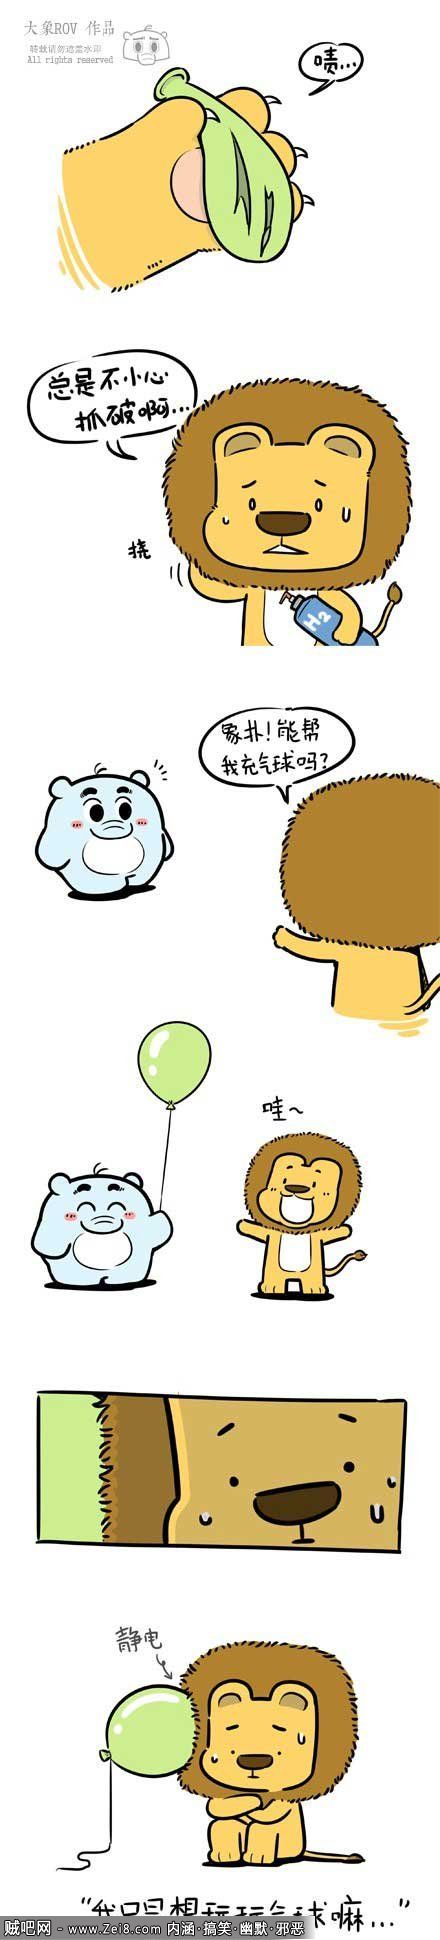 【象扑君漫画系列】小狮子玩气球